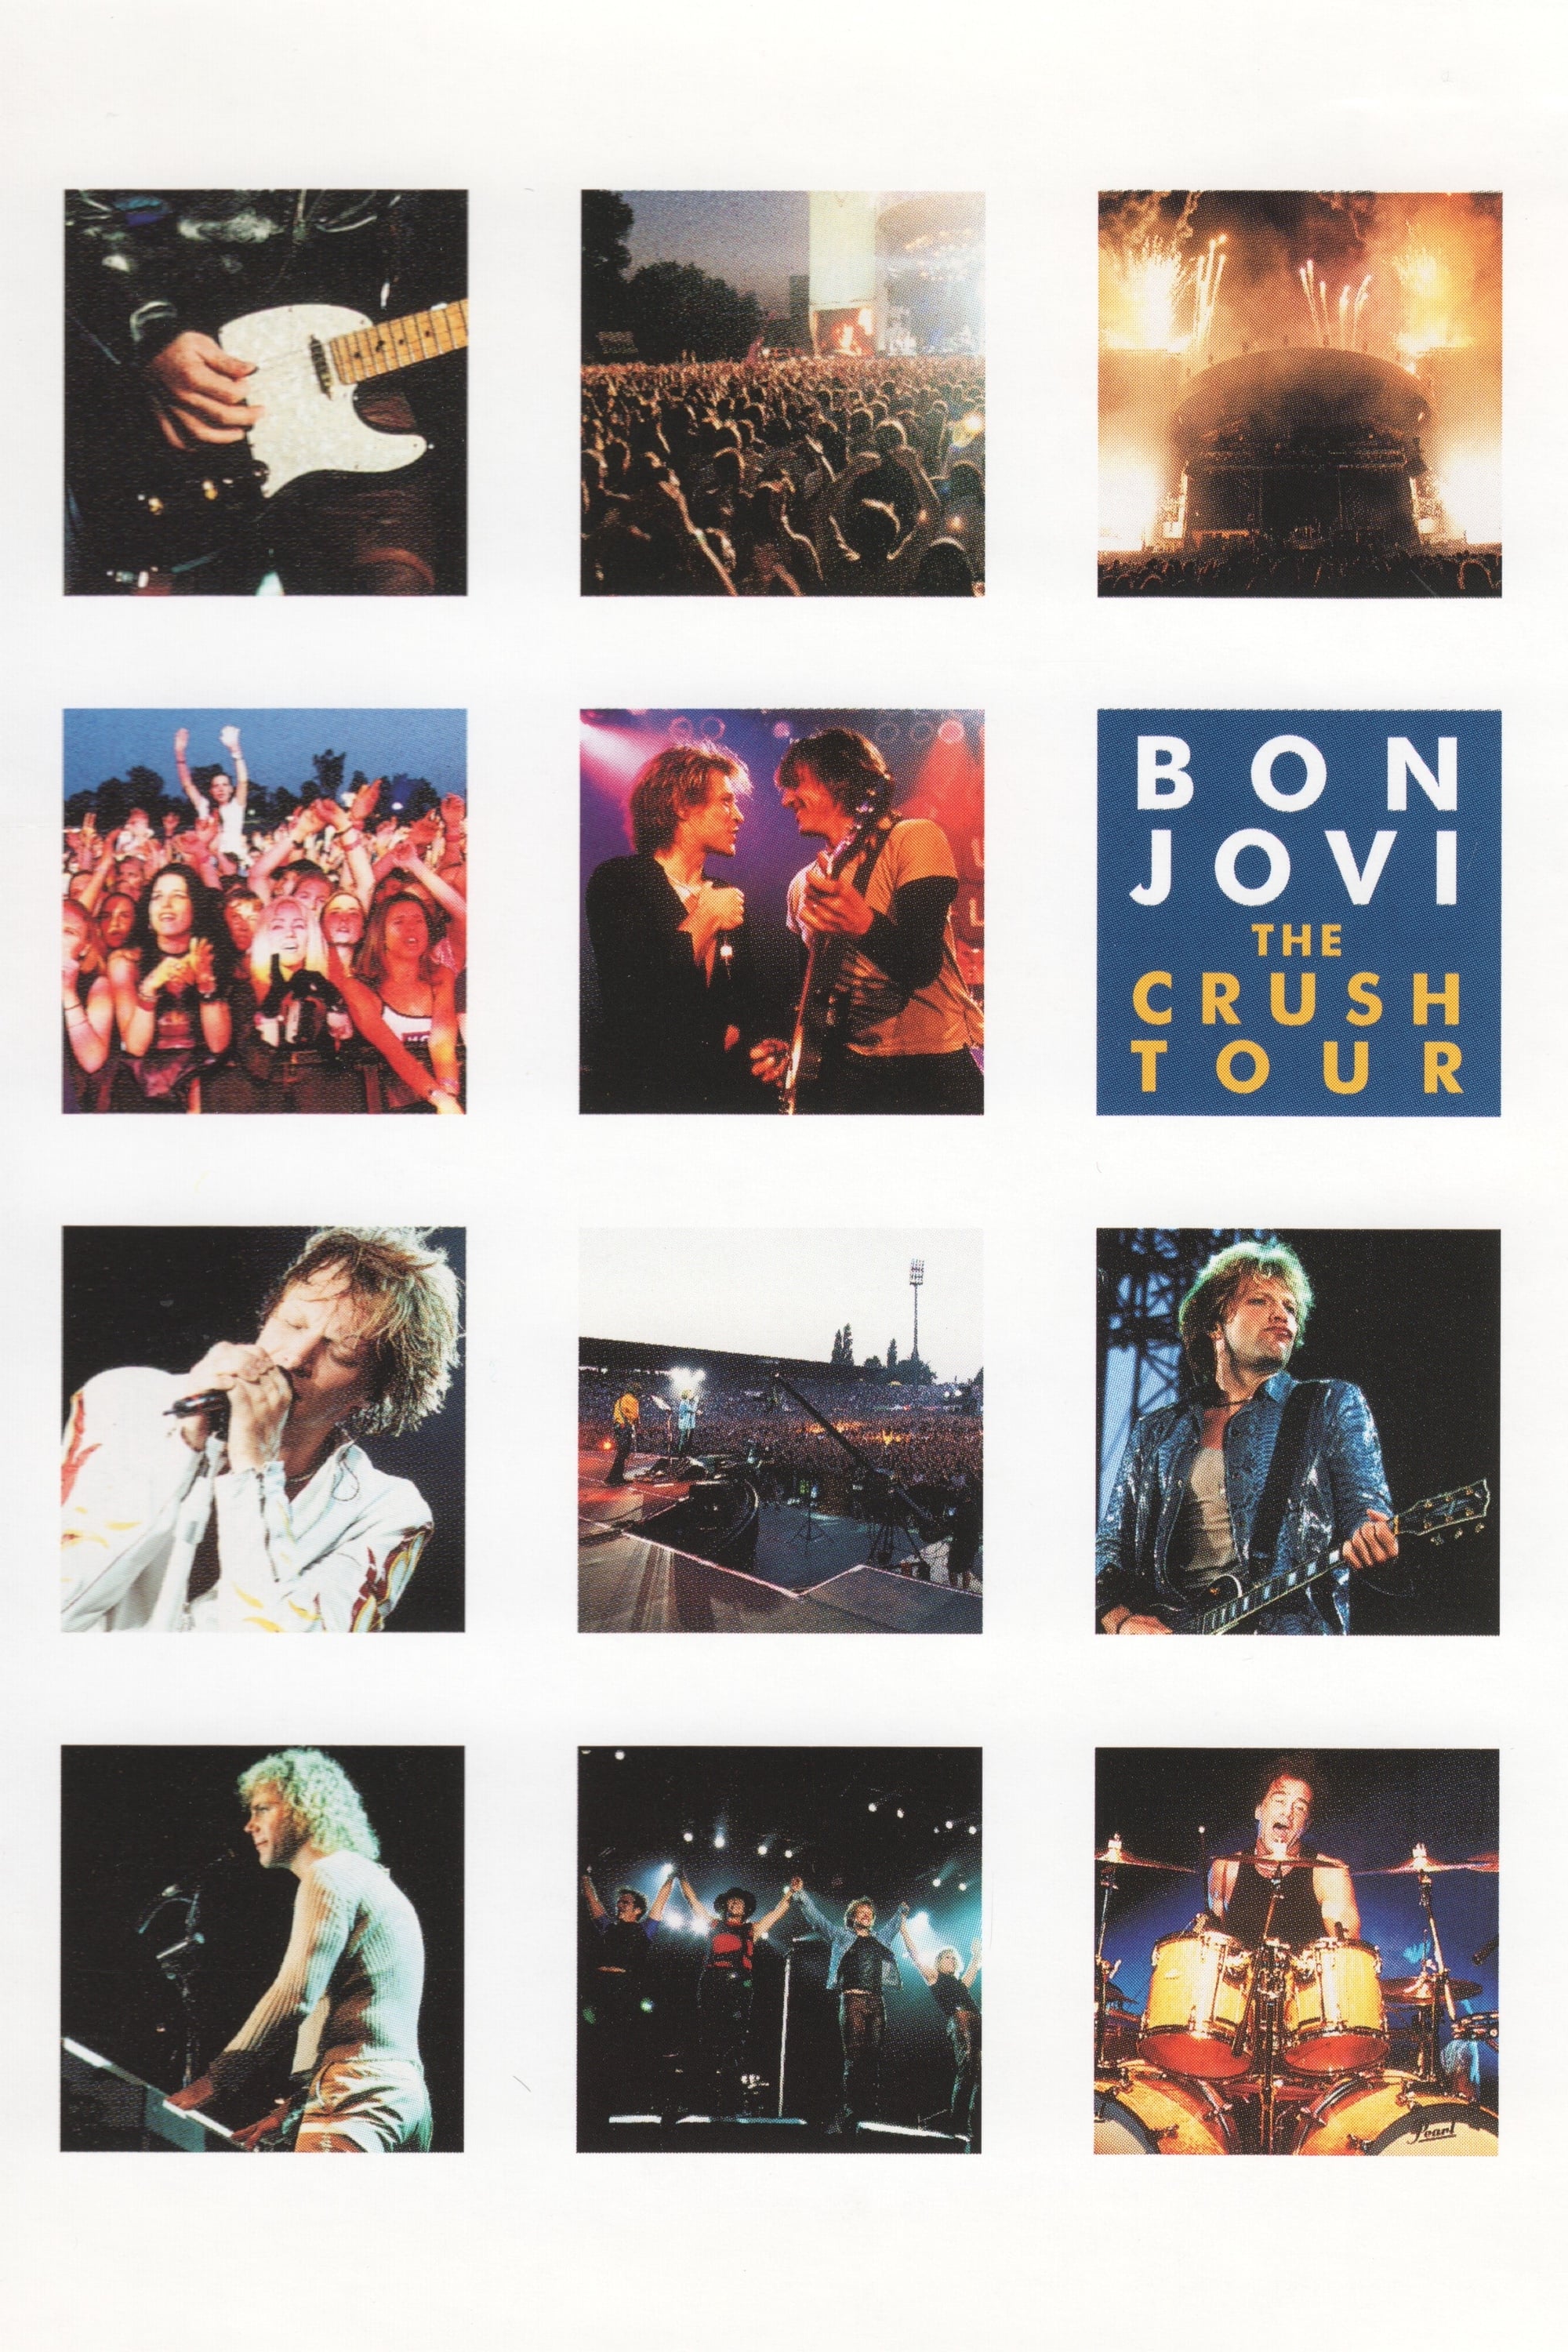 Bon Jovi: The Crush Tour streaming